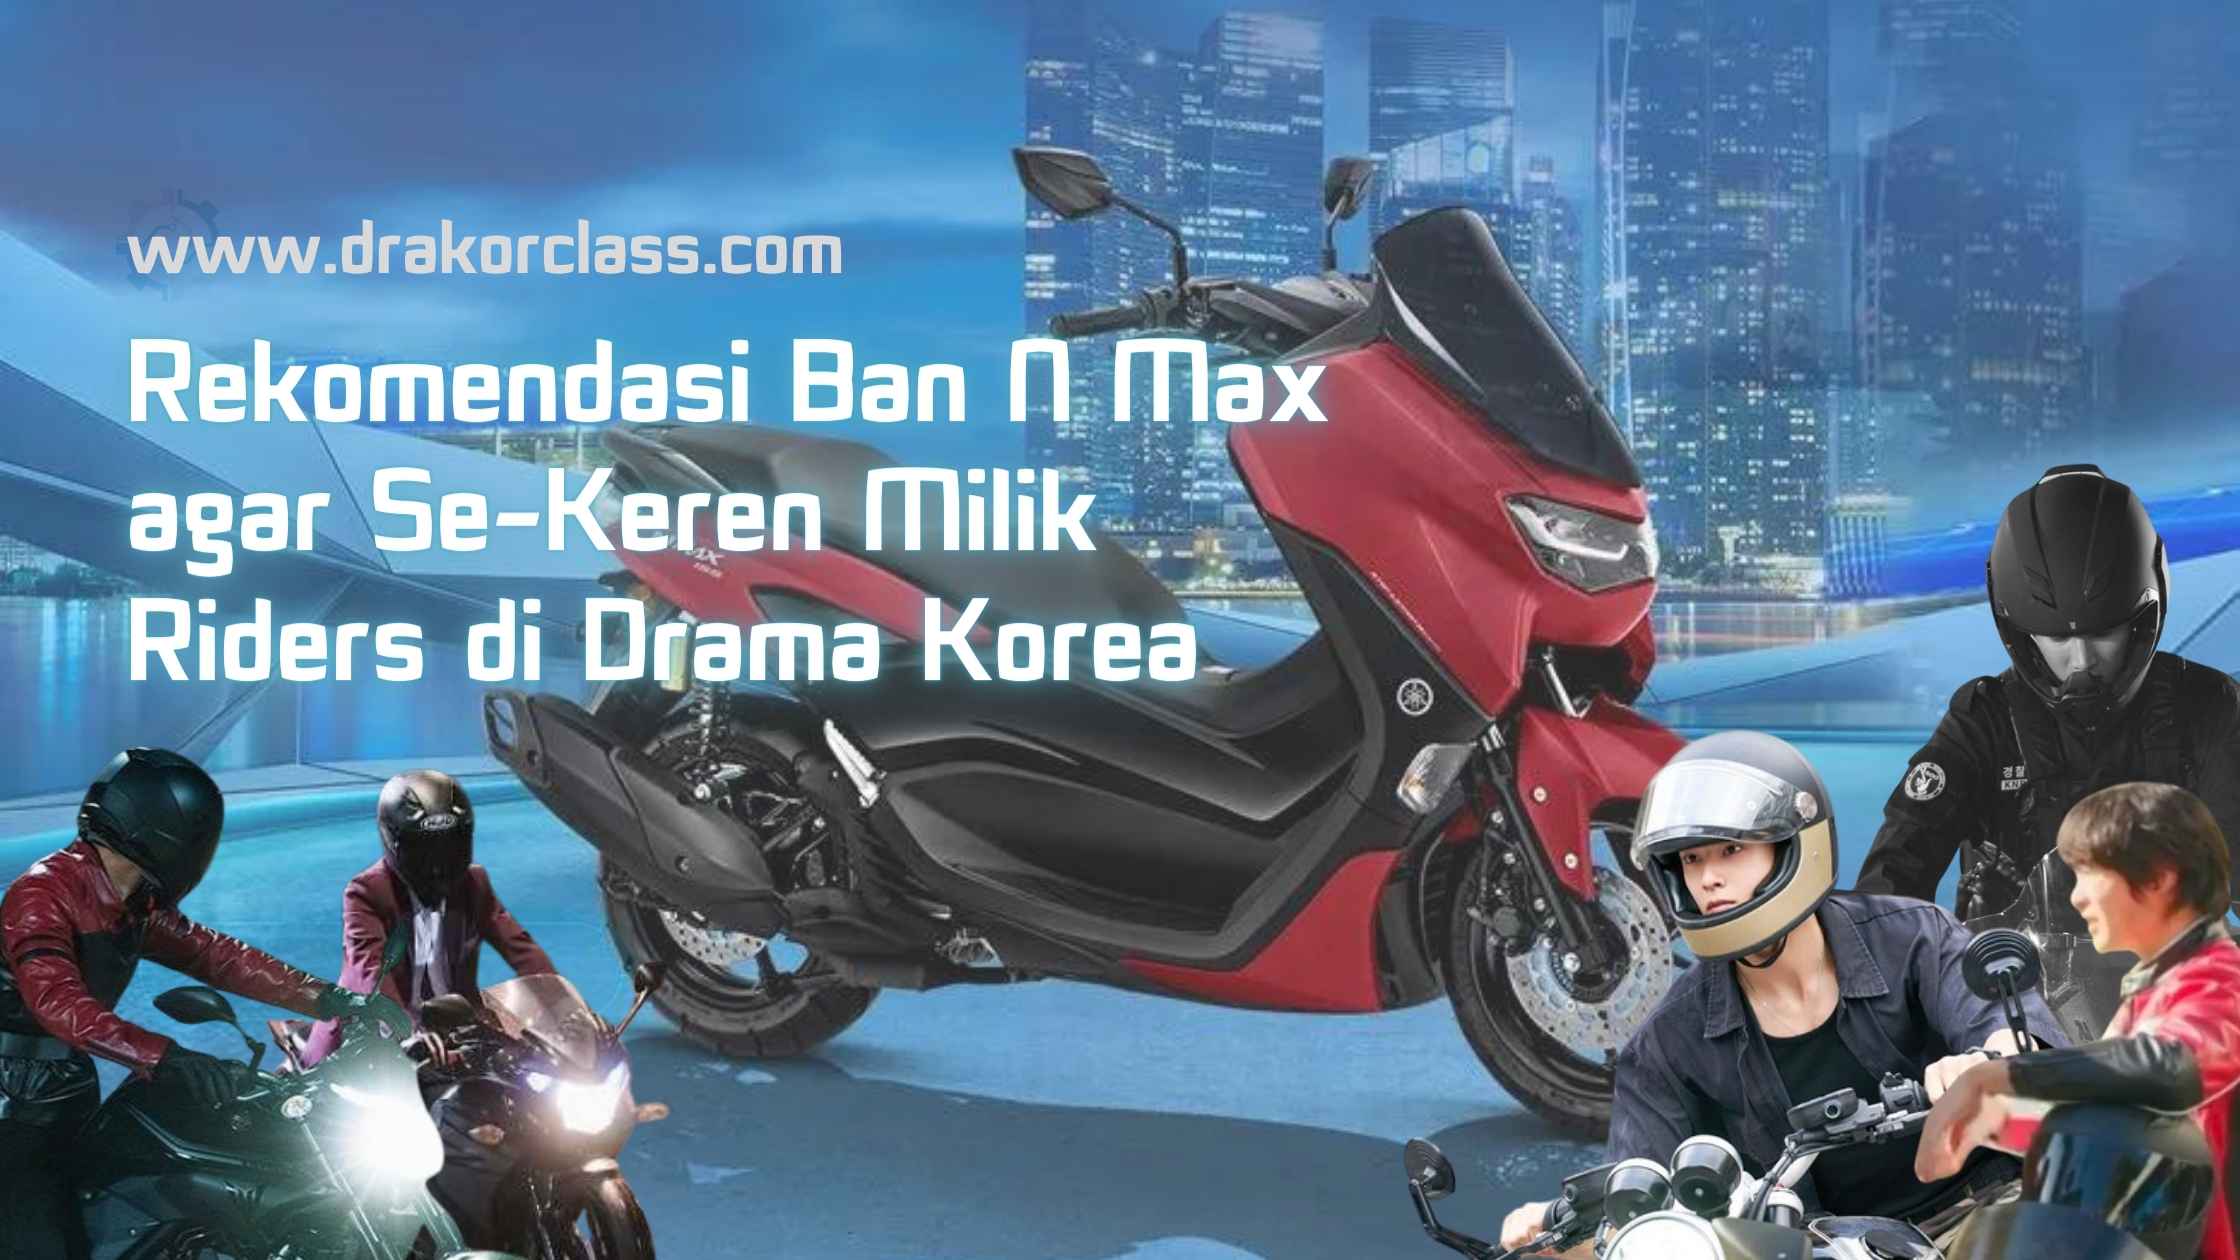 Rekomendasi Ban N Max agar Se-Keren Milik Riders di Drama Korea